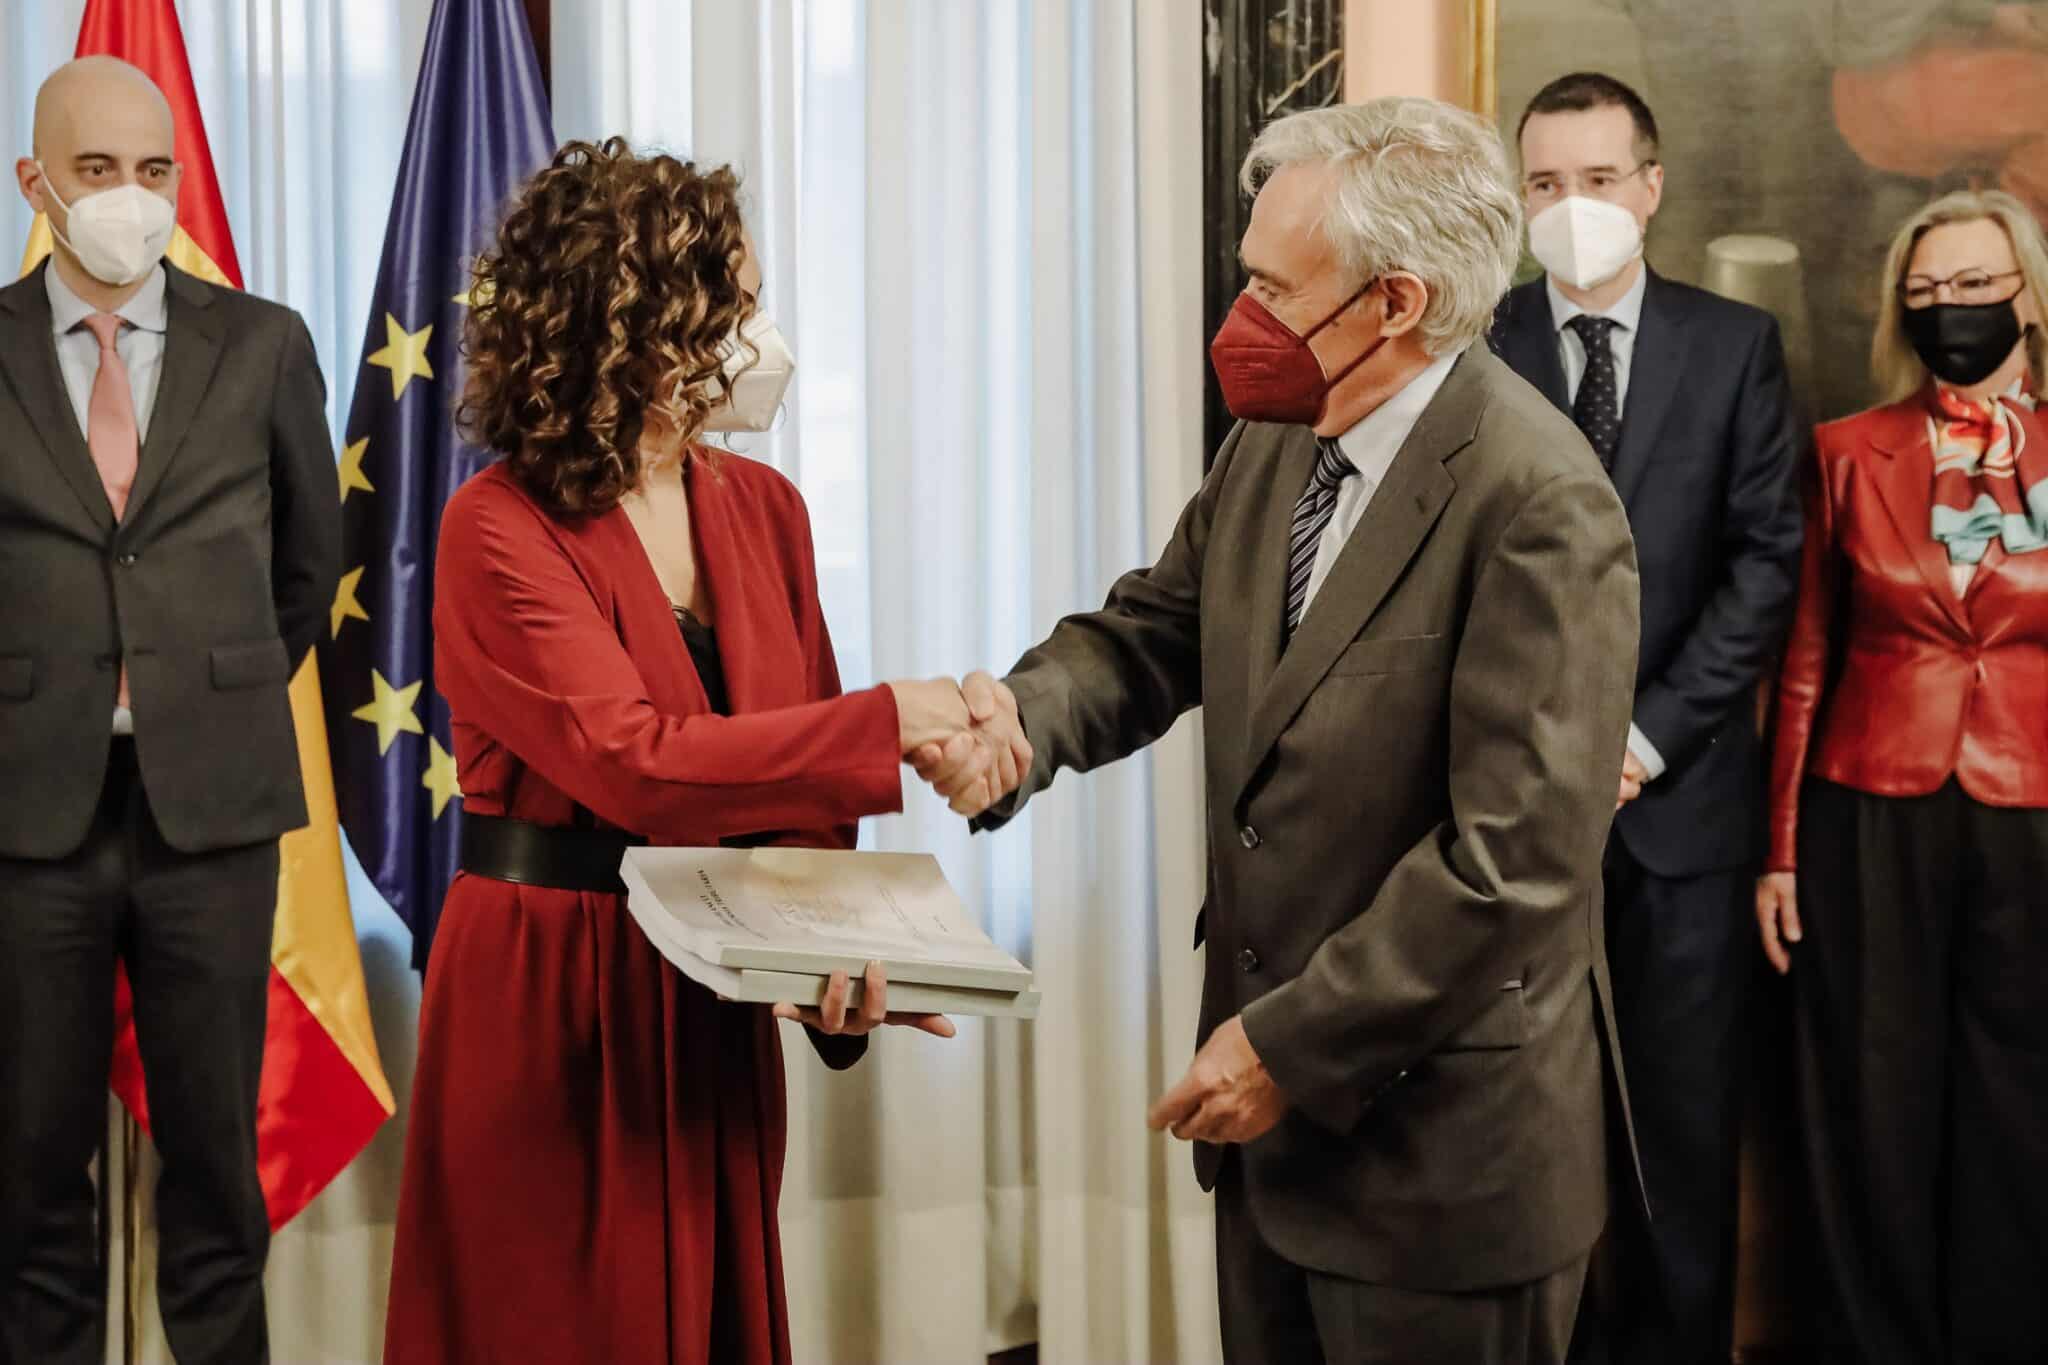 La ministra de Hacienda, María Jesús Montero, recibe el Libro Blanco del comité de expertos para la reforma fiscal de la mano del presidente del Comité de Expertos, Jesús Ruiz-Huerta.